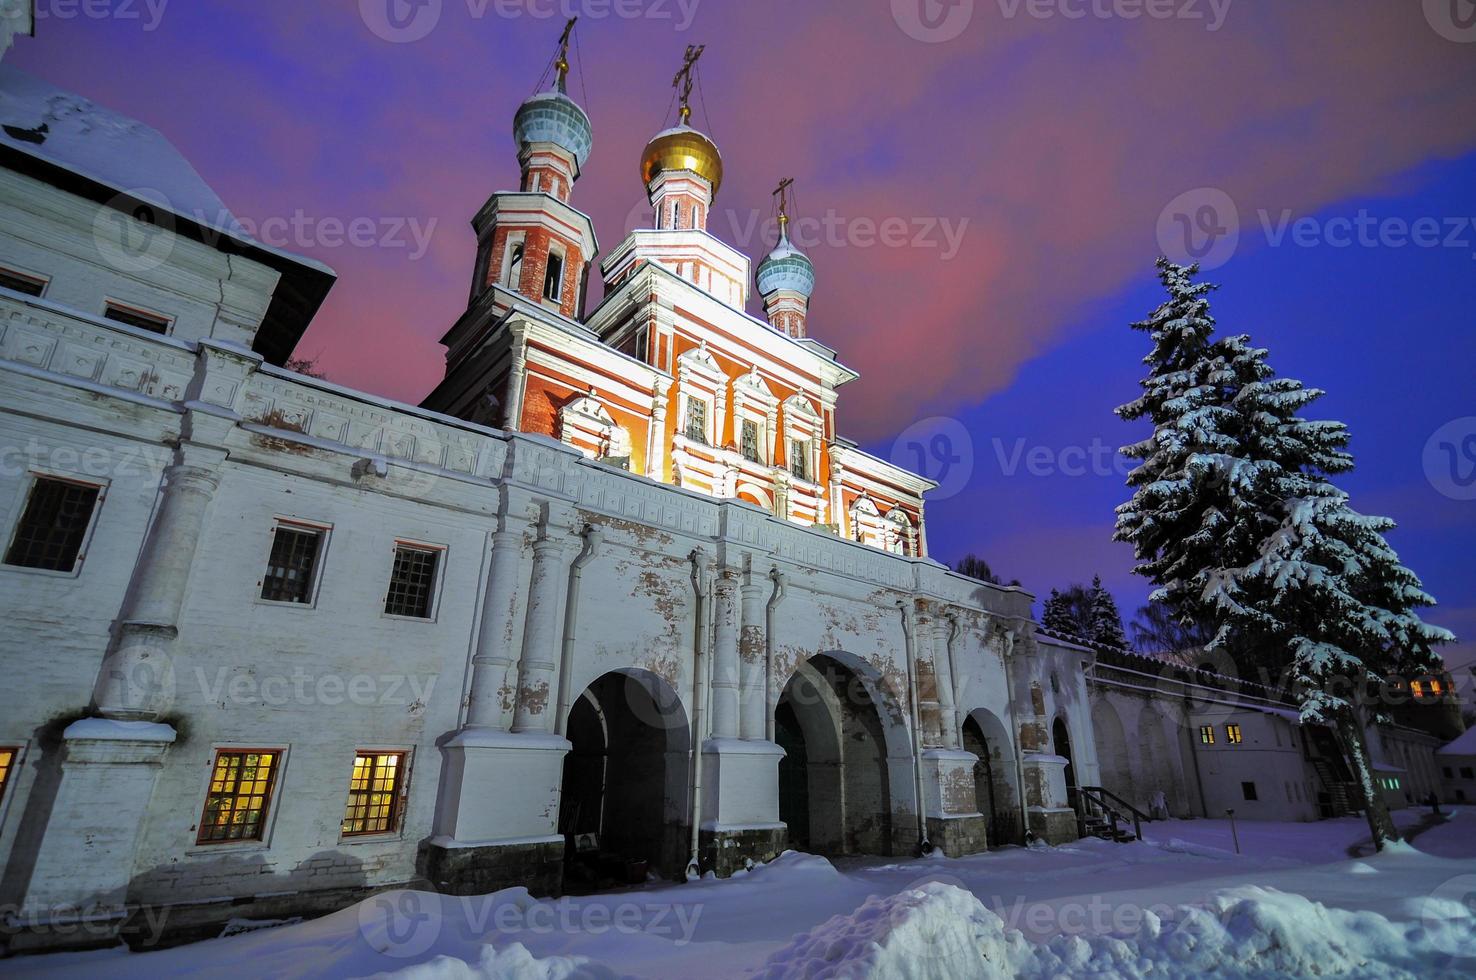 iglesias ortodoxas rusas en el monasterio del convento de novodevichy, moscú, rusia, sitio del patrimonio mundial de la unesco en la noche durante el invierno. foto